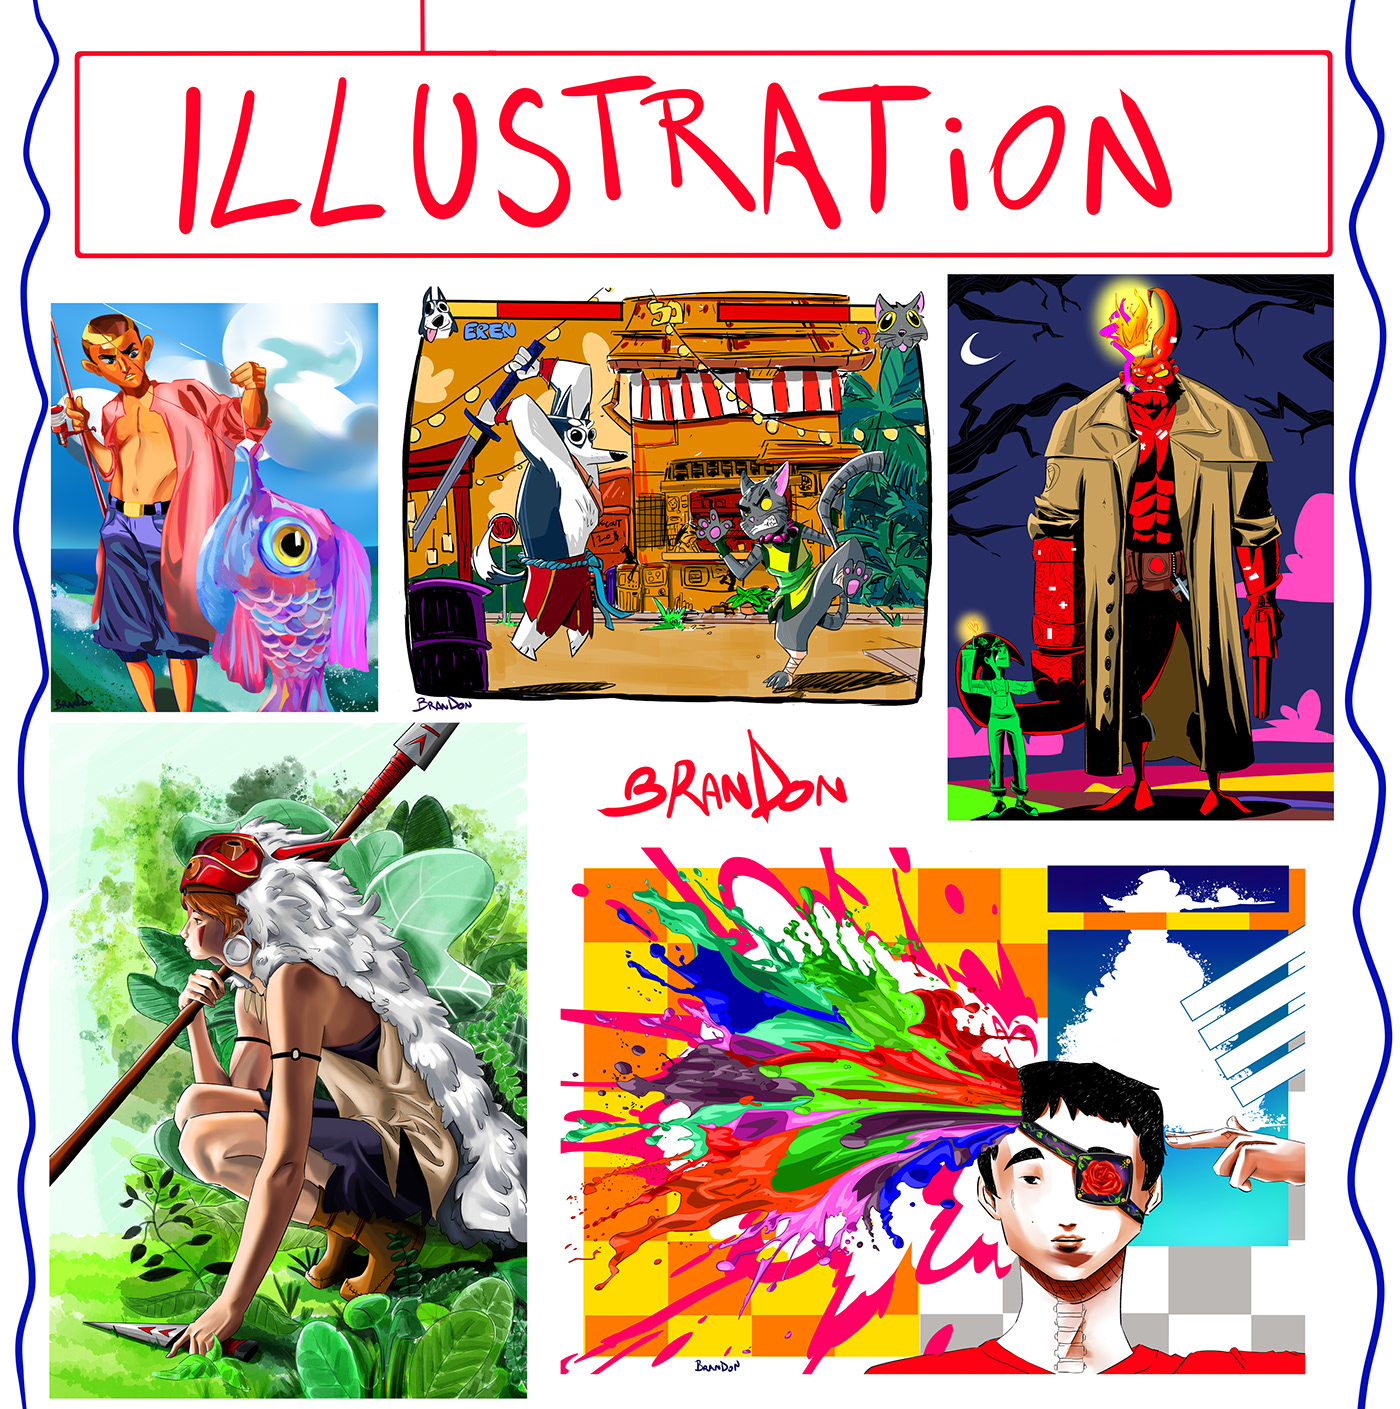 portfolio CV Character design  artwork sketch cartoon digital illustration Drawing  Digital Art  ILLUSTRATION 